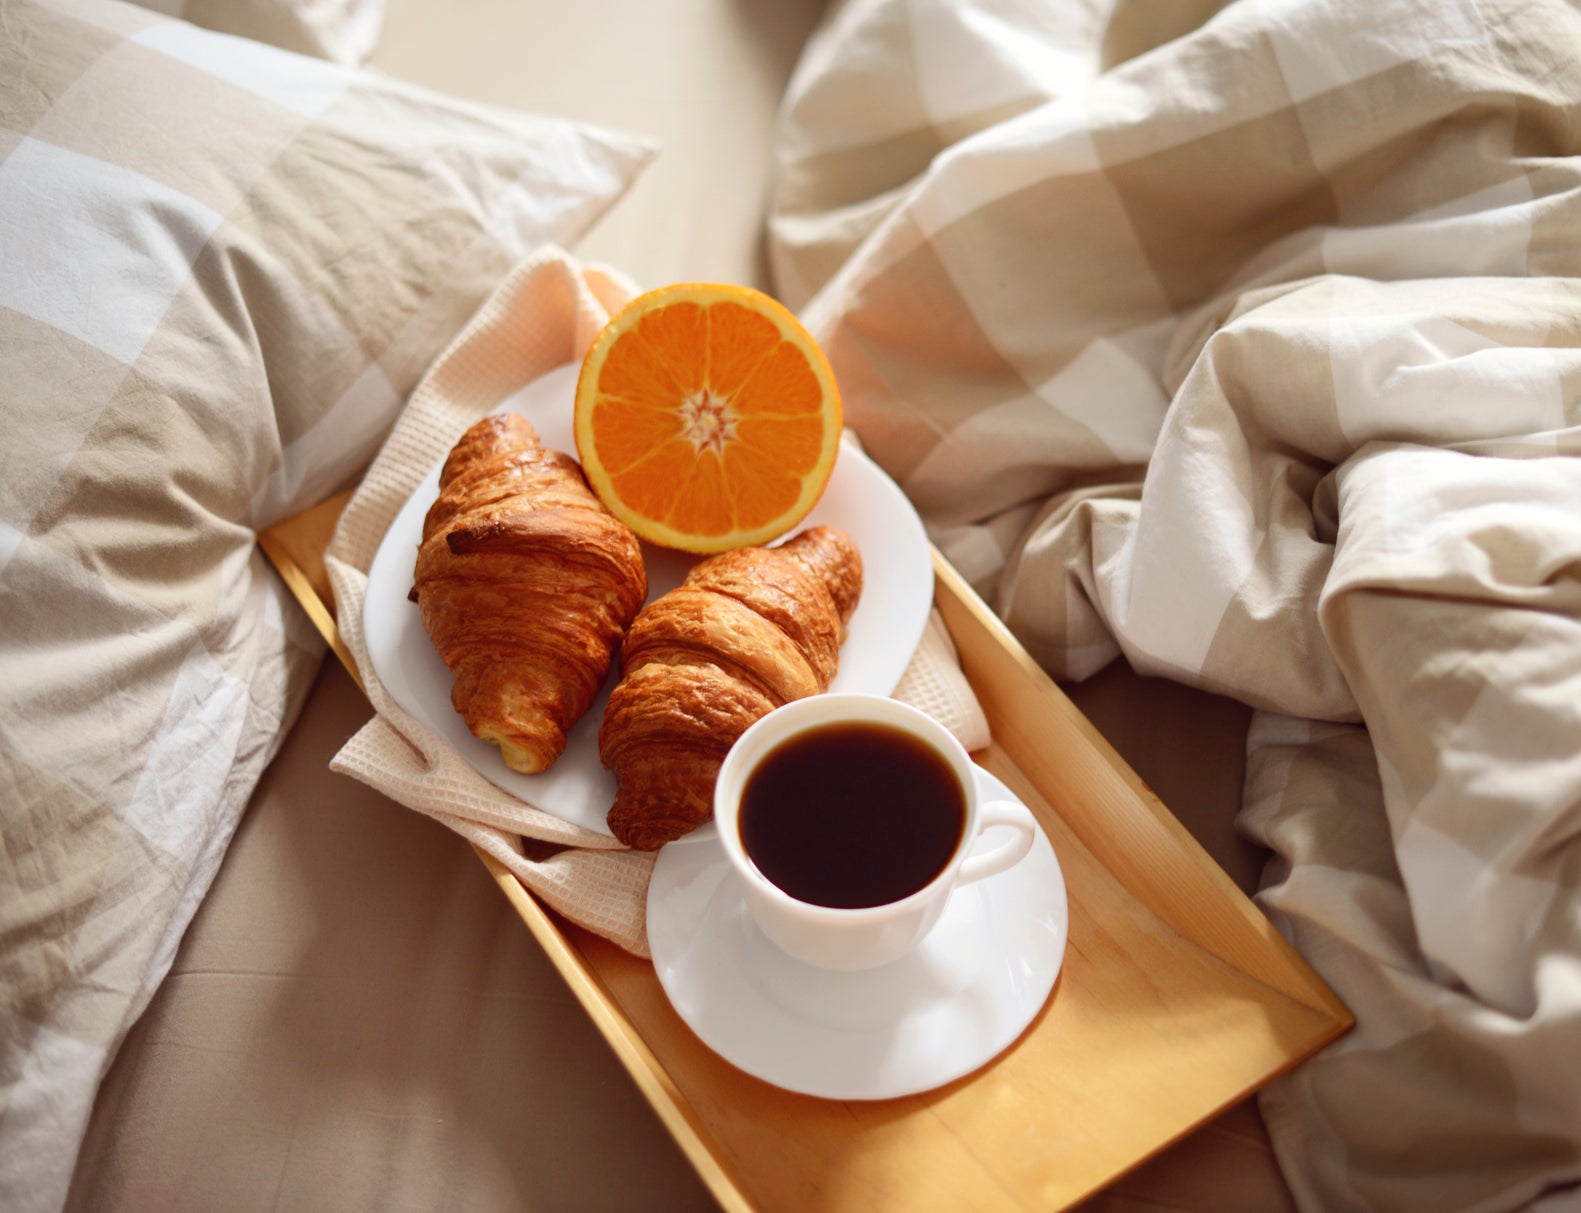 Everyone loves breakfast in bed